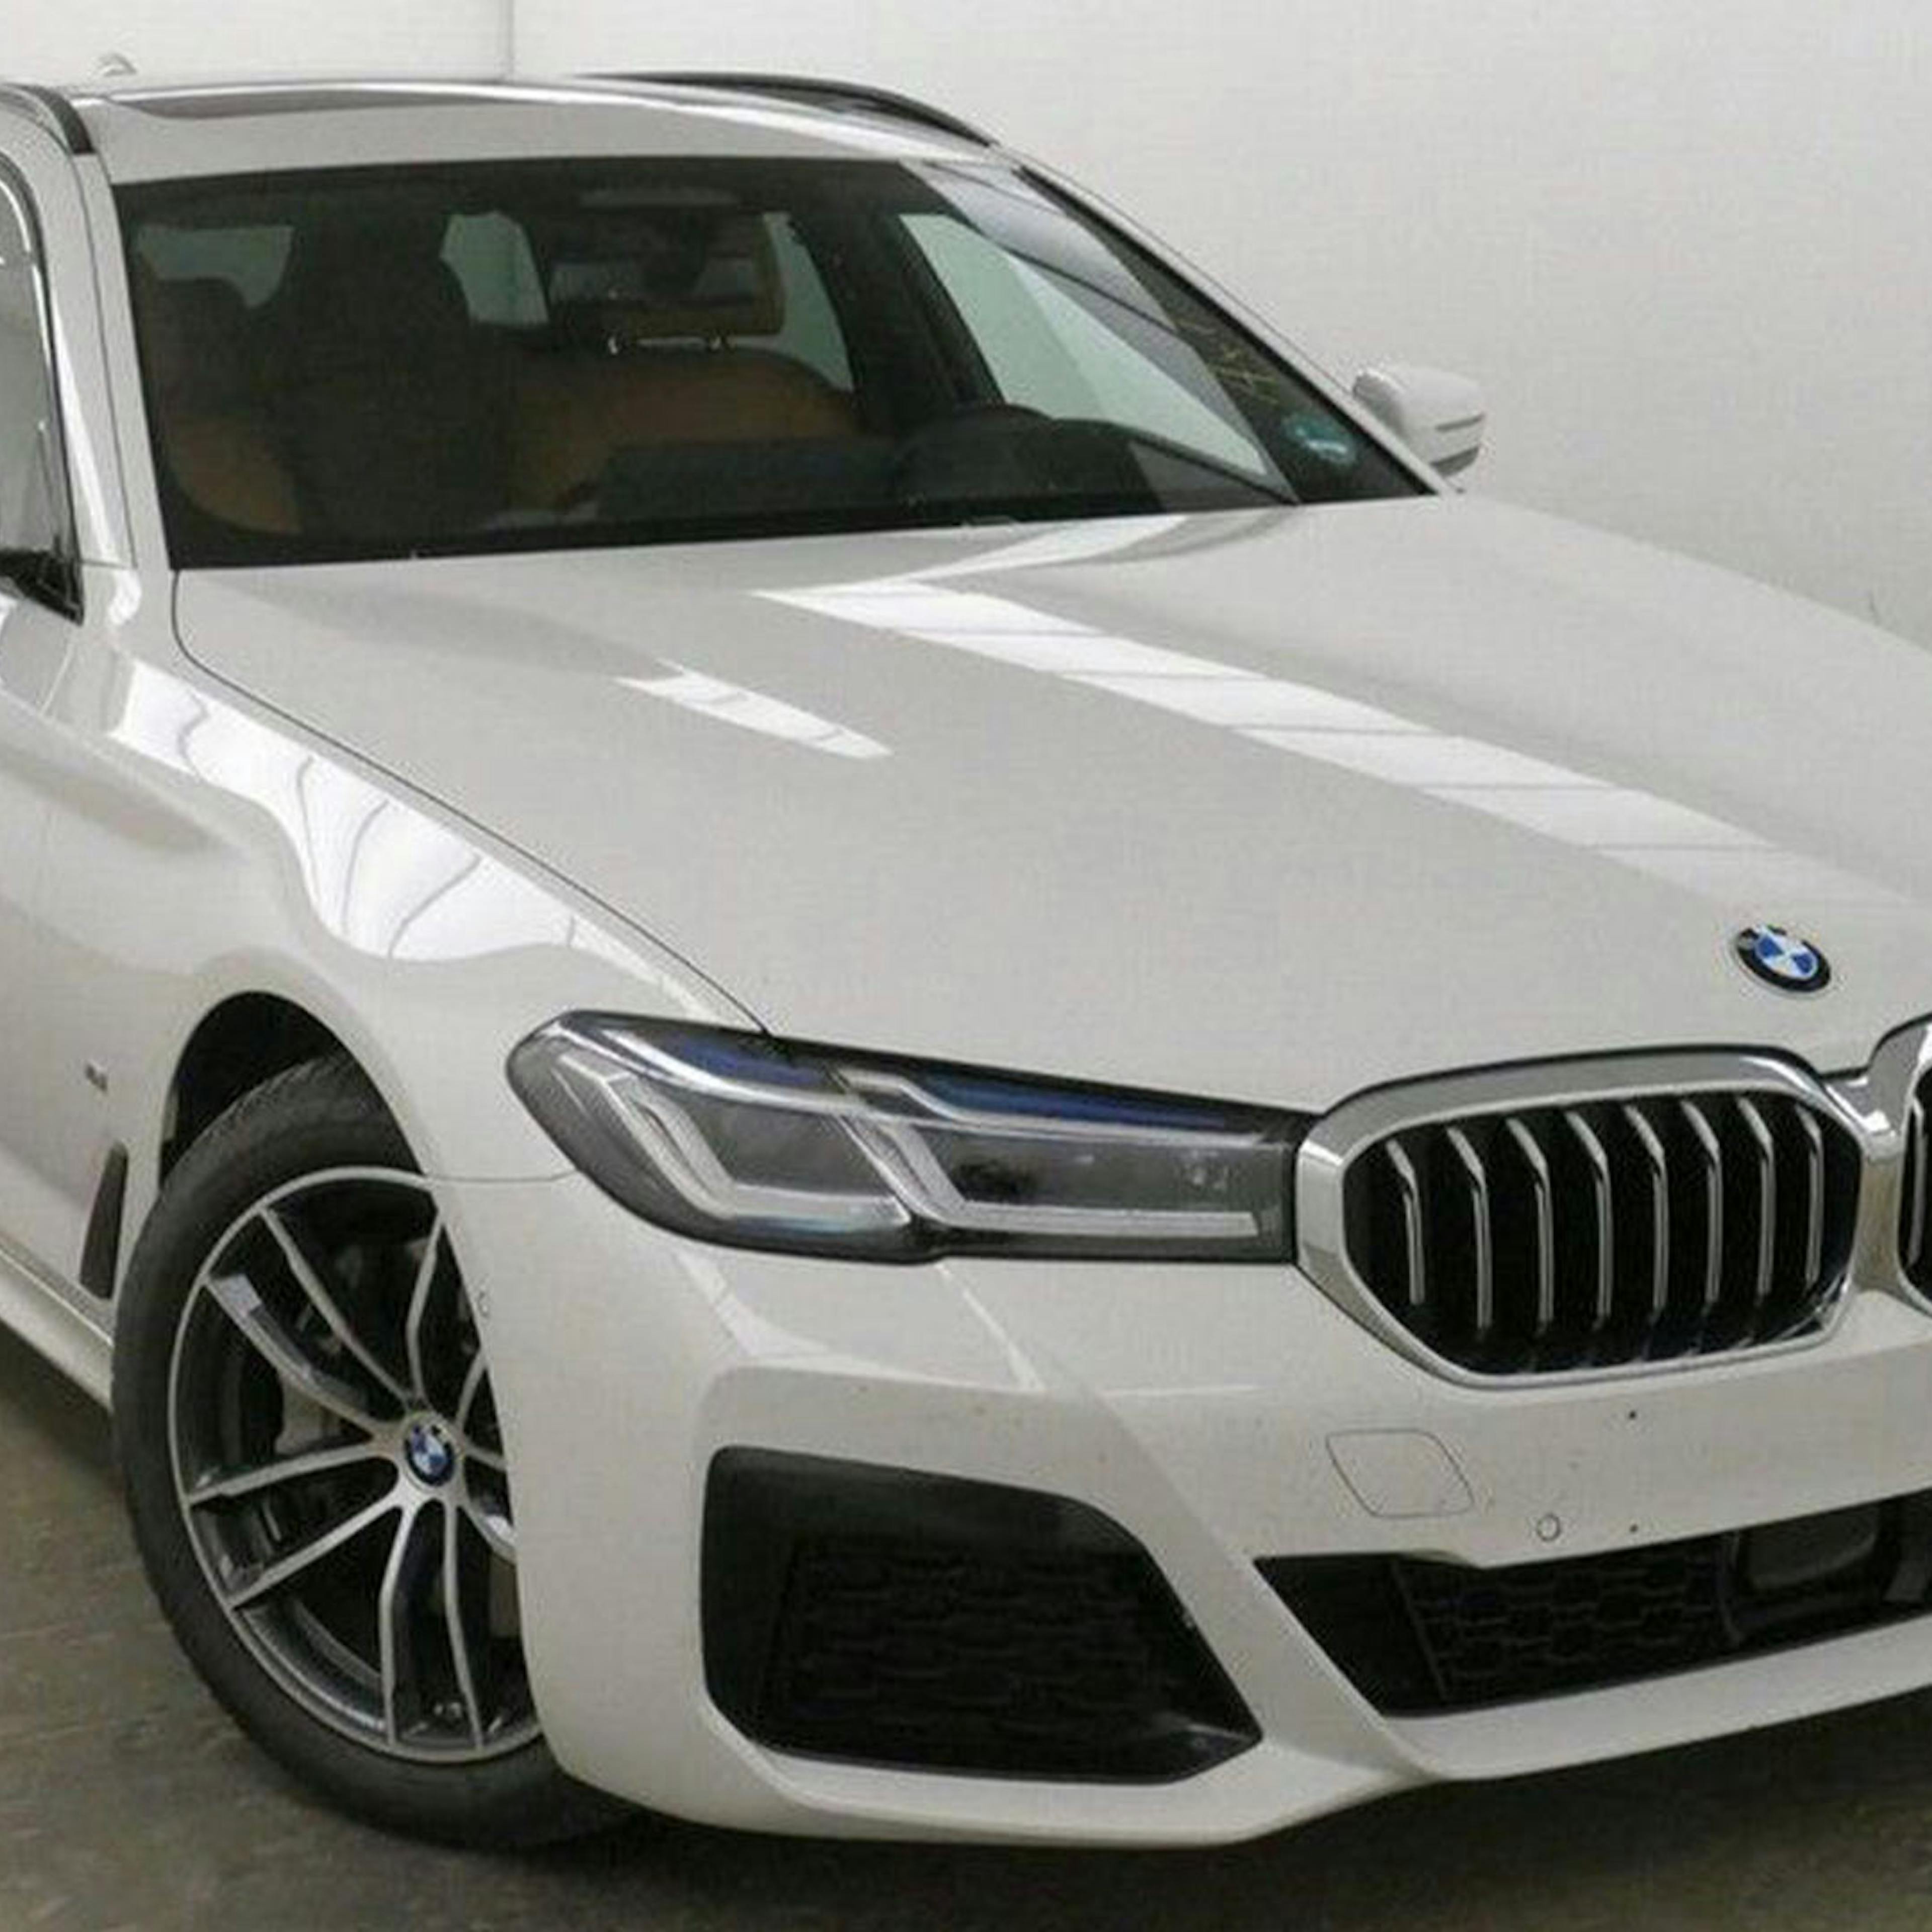 Ein weißer BMW 5er Touring steht vor einer weißen Wand.